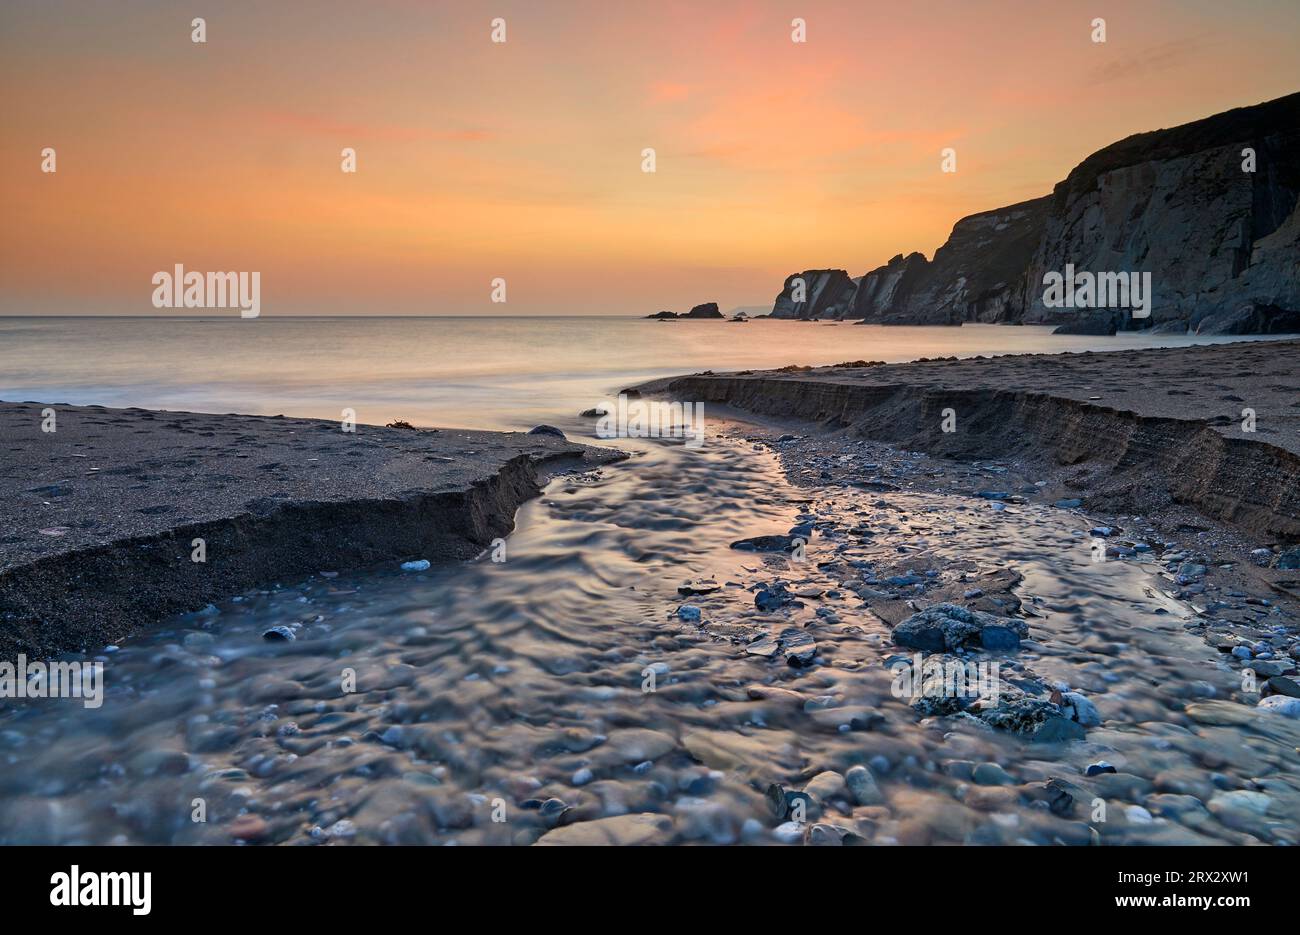 Un ruisseau traverse le sable lorsqu'il atteint la mer, au crépuscule, à Ayrmer Cove, une crique isolée près de Kingsbridge, sur la côte sud du Devon, en Angleterre Banque D'Images